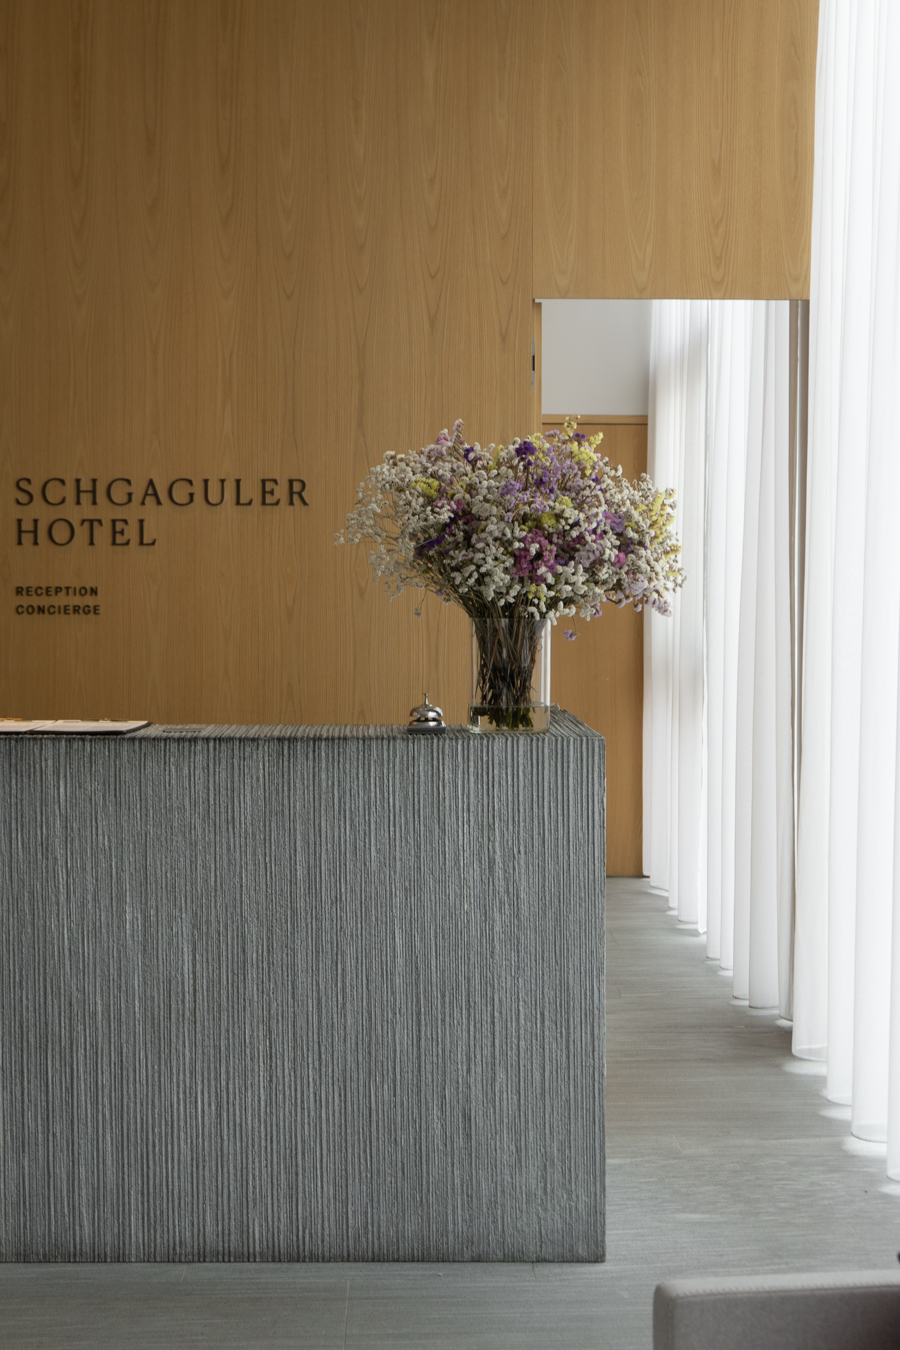 Schgaguler Hotel, Dolomites Italy